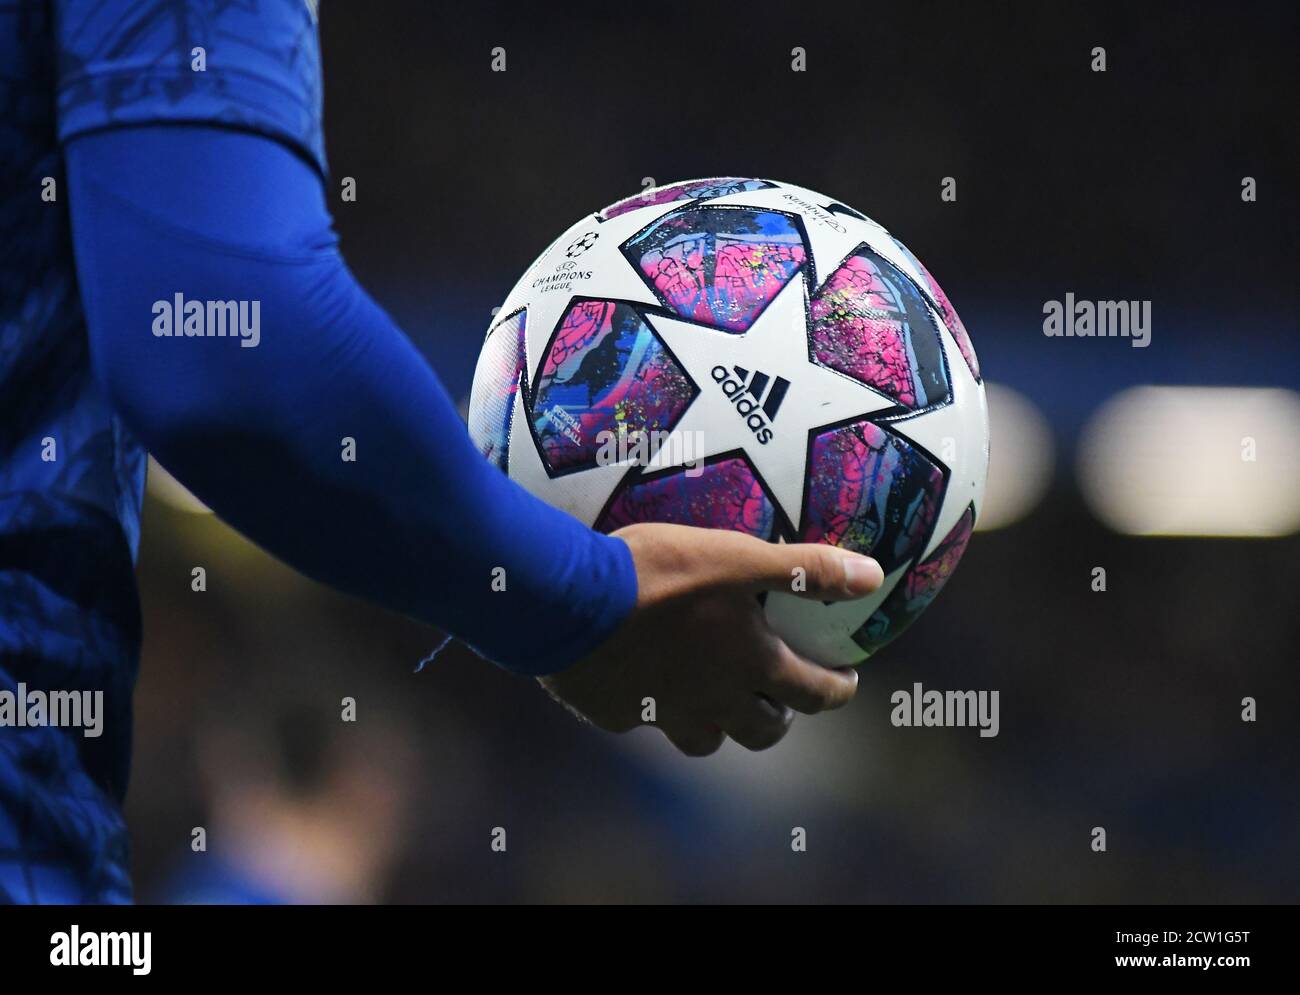 LONDON, ENGLAND - 26. FEBRUAR 2020: Der offizielle Champions-League-Endspielball, der während der UEFA Champions-League-Runde 16 zwischen dem FC Chelsea und Bayern München auf der Stamford Bridge im Jahr 2019/20 abgebildet wurde. Stockfoto